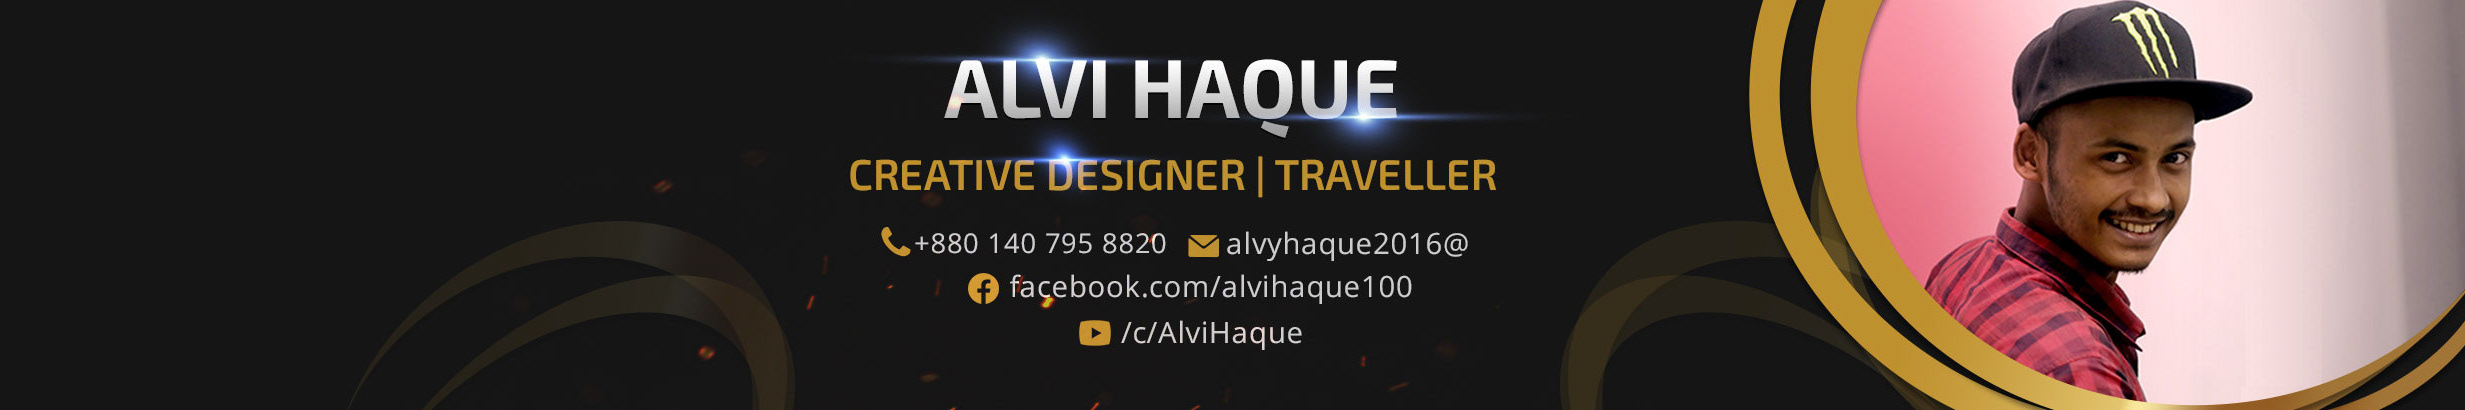 Profil-Banner von Alvi Haque